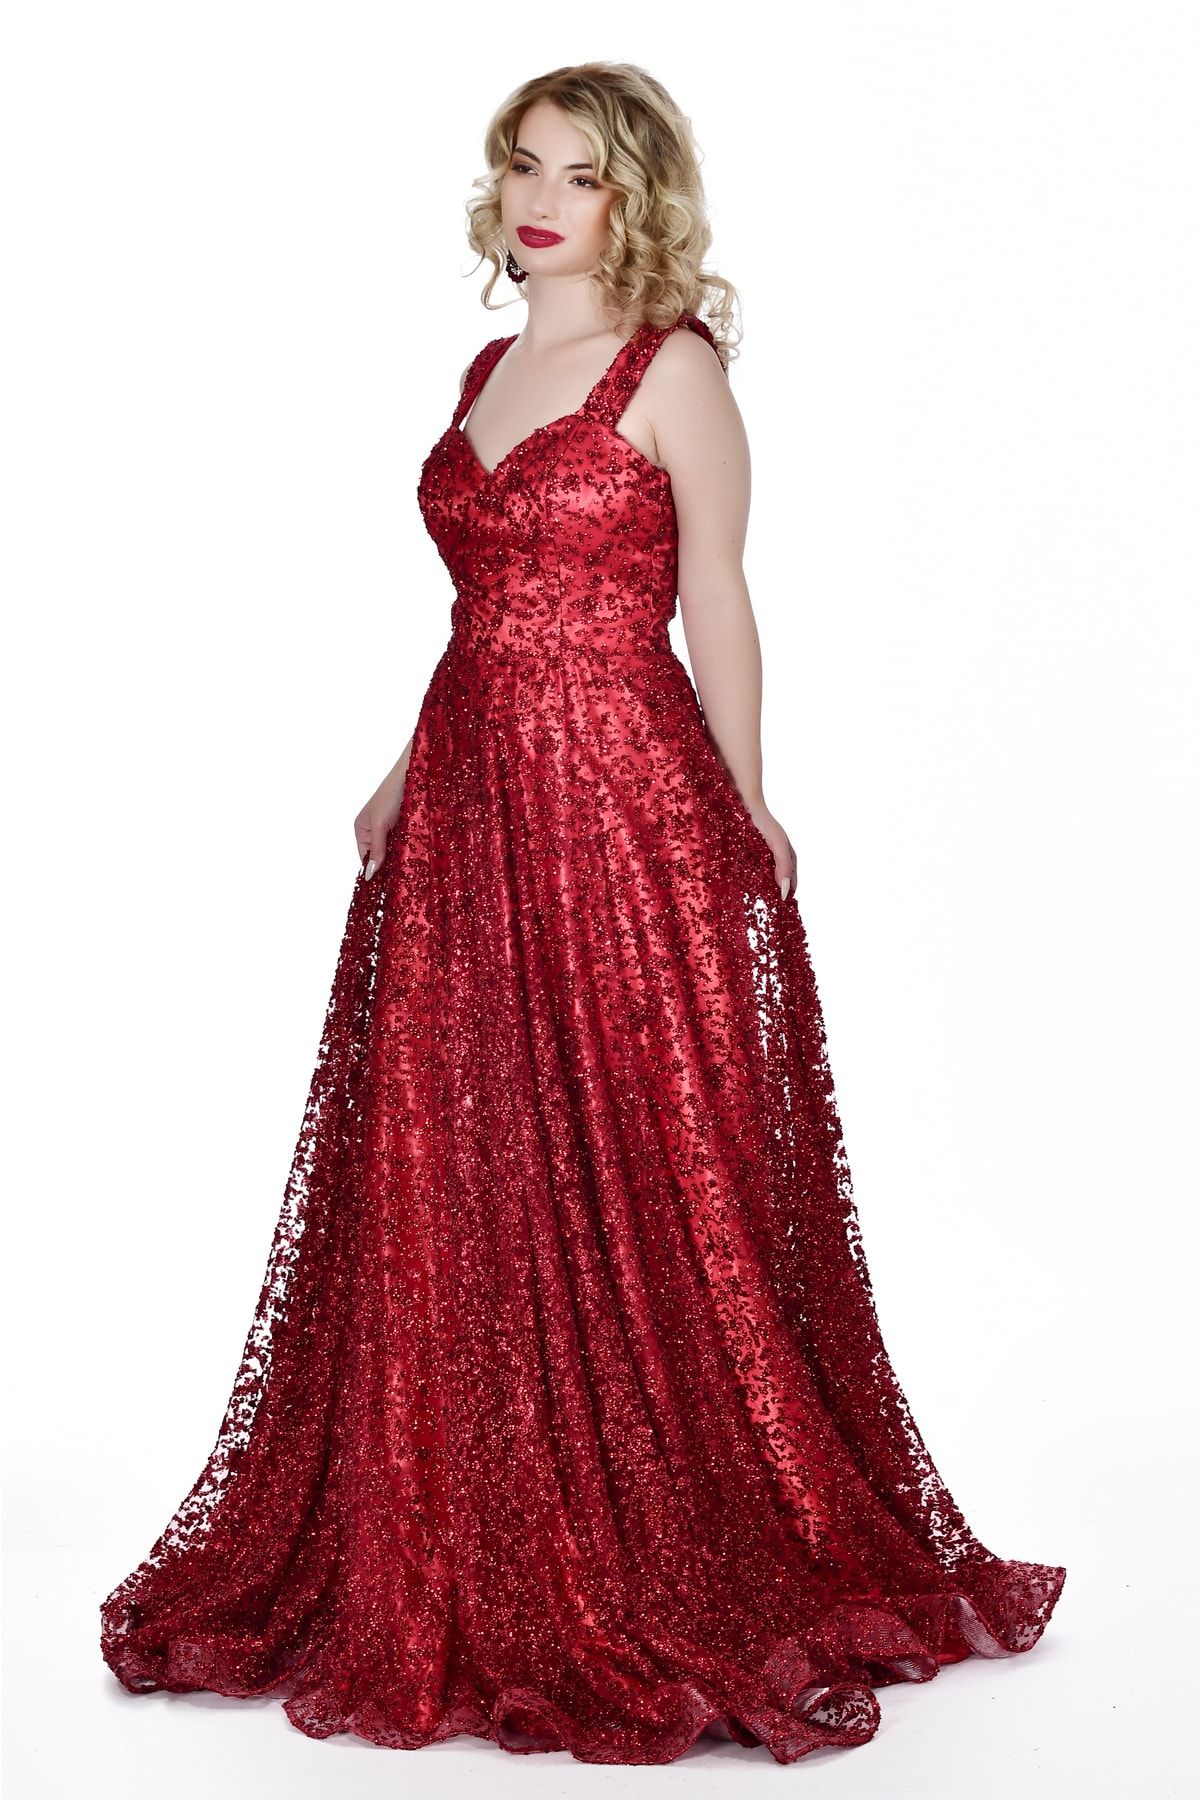 Kulis Kırmızı Askılı Kalp Yaka Pullu Prenses Model Abiye & Mezuniyet Elbisesi